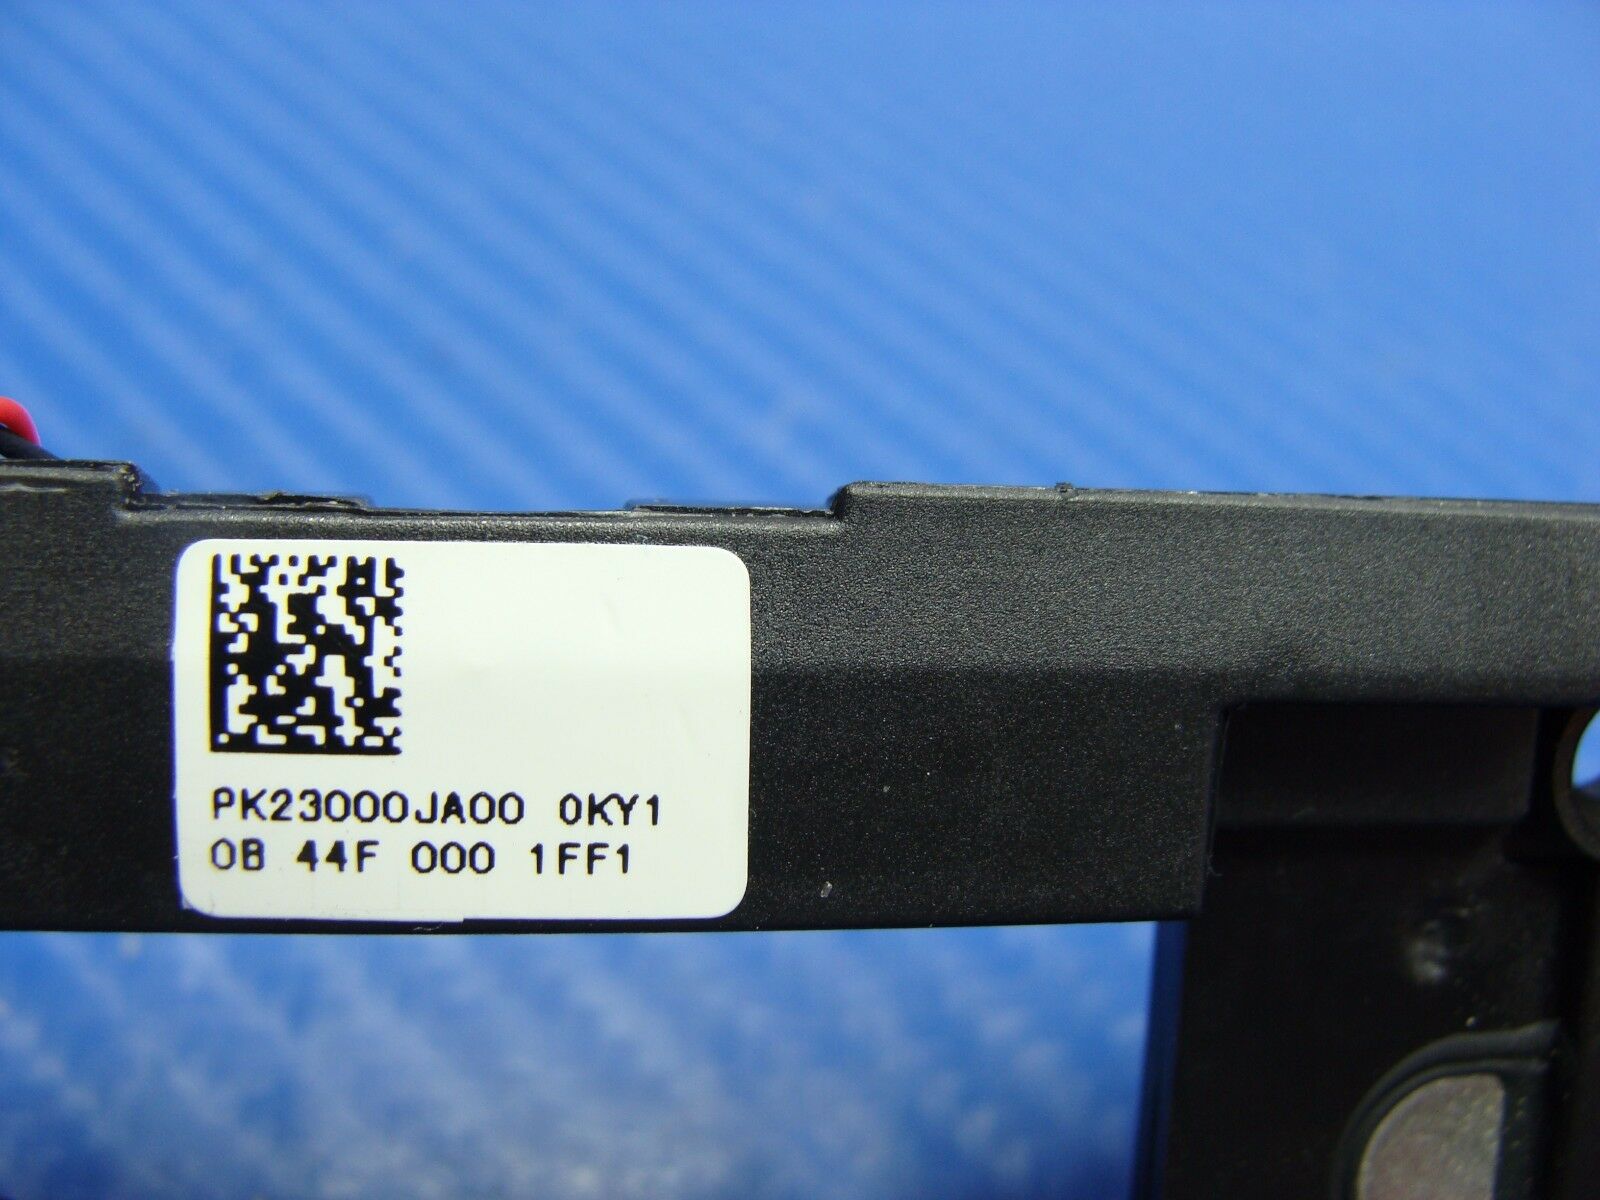 Lenovo ThinkPad X240 12.5